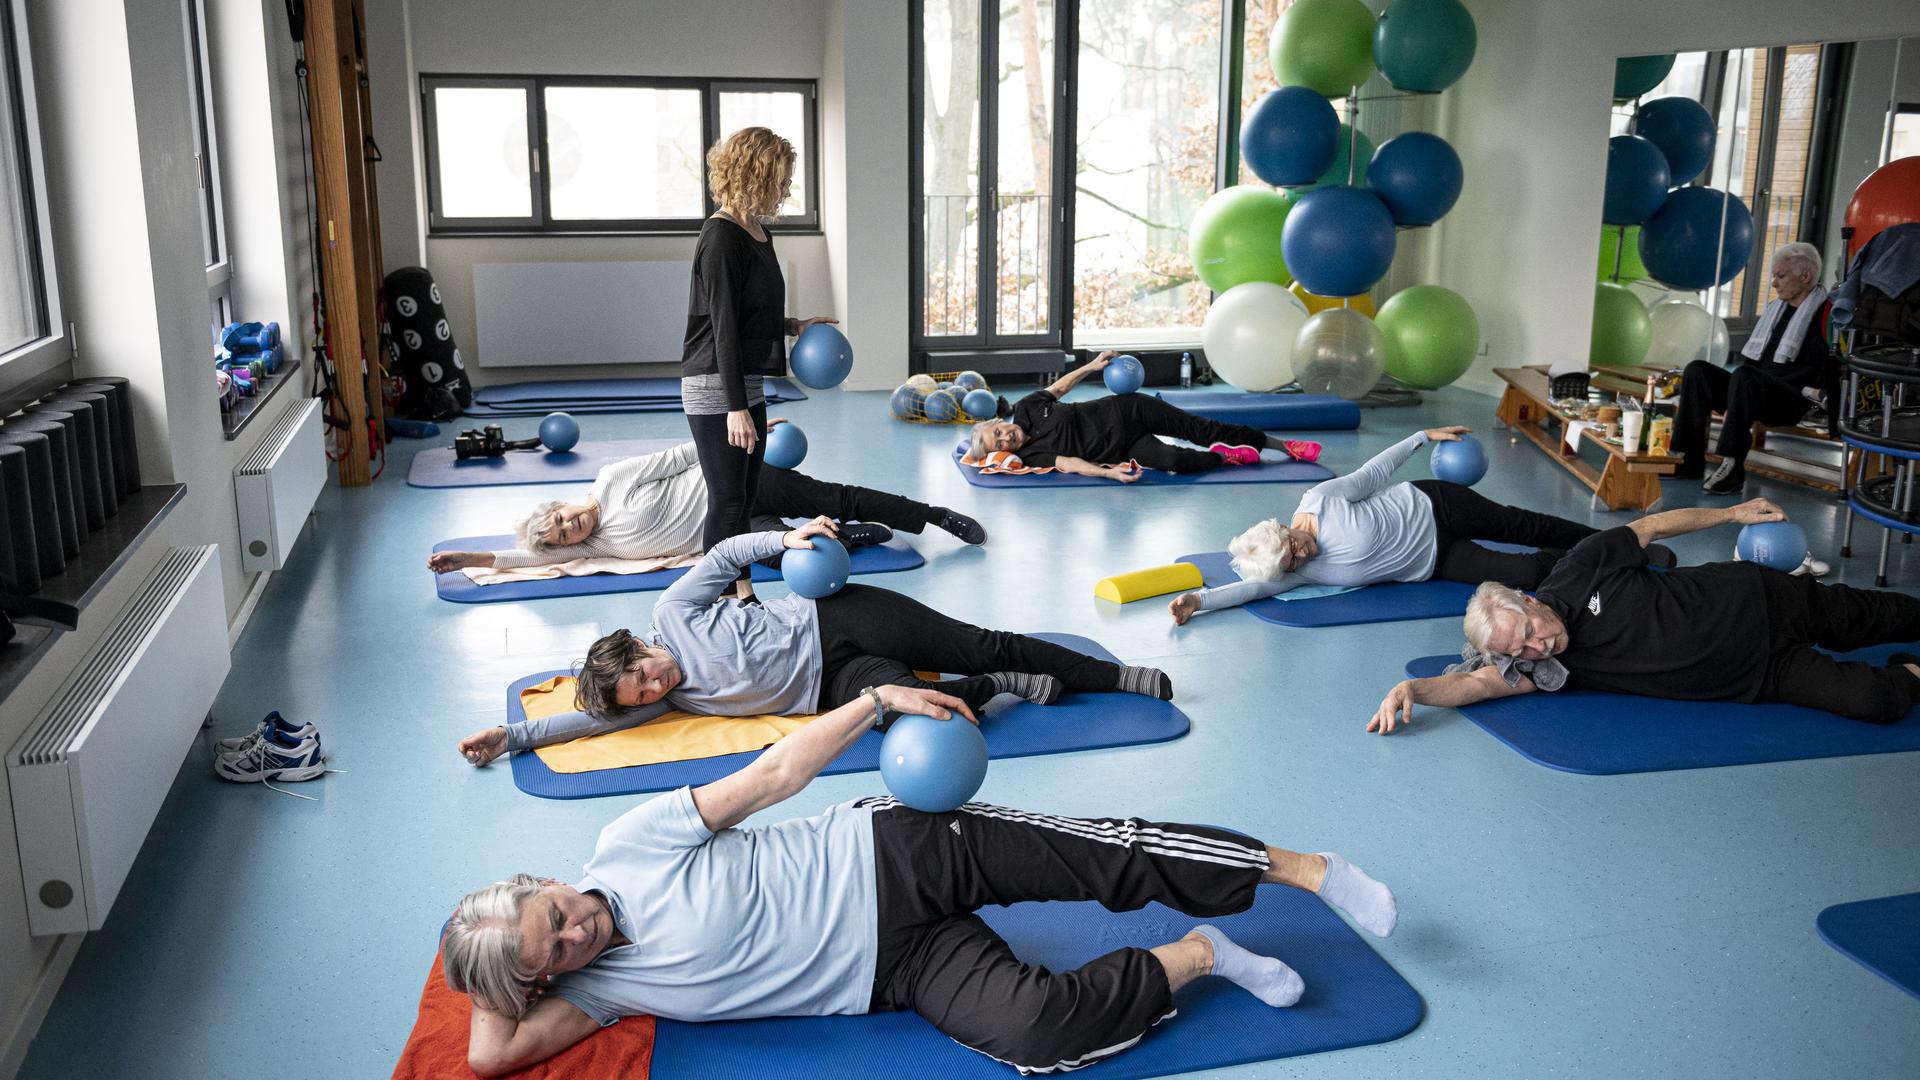 Anke von Popowski, Trainerin im Sport-Gesundheitspark Berlin-Zehlendorf, betreut die Teilnehmer bei ihren Übungen. (zu dpa "Nach dem Krebs wieder auf die Beine kommen - wie Sport hilft") +++ dpa-Bildfunk +++